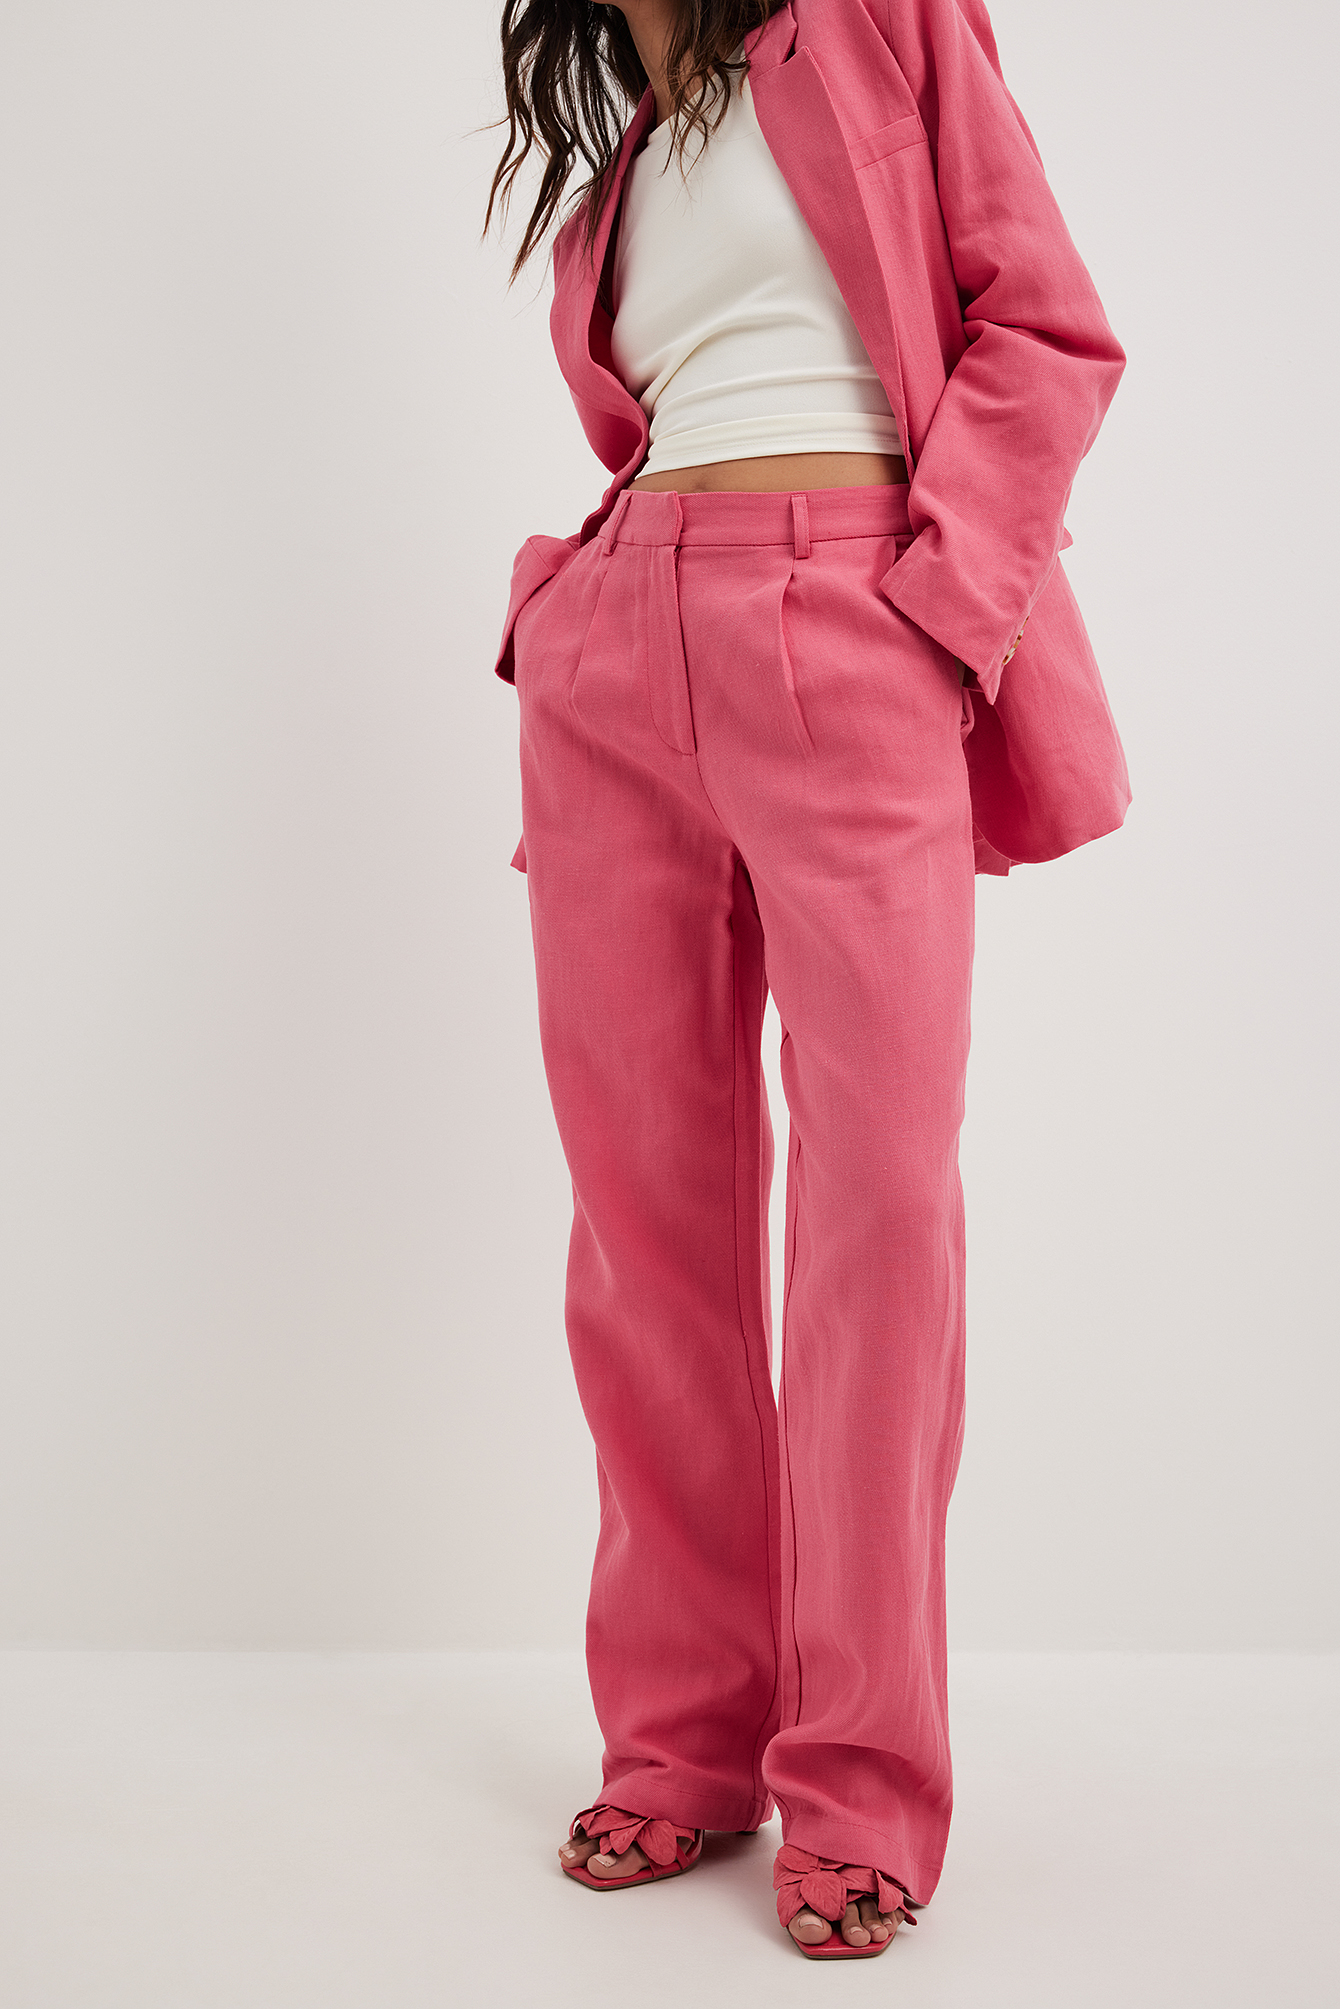 Women's Pink High Waist Pants